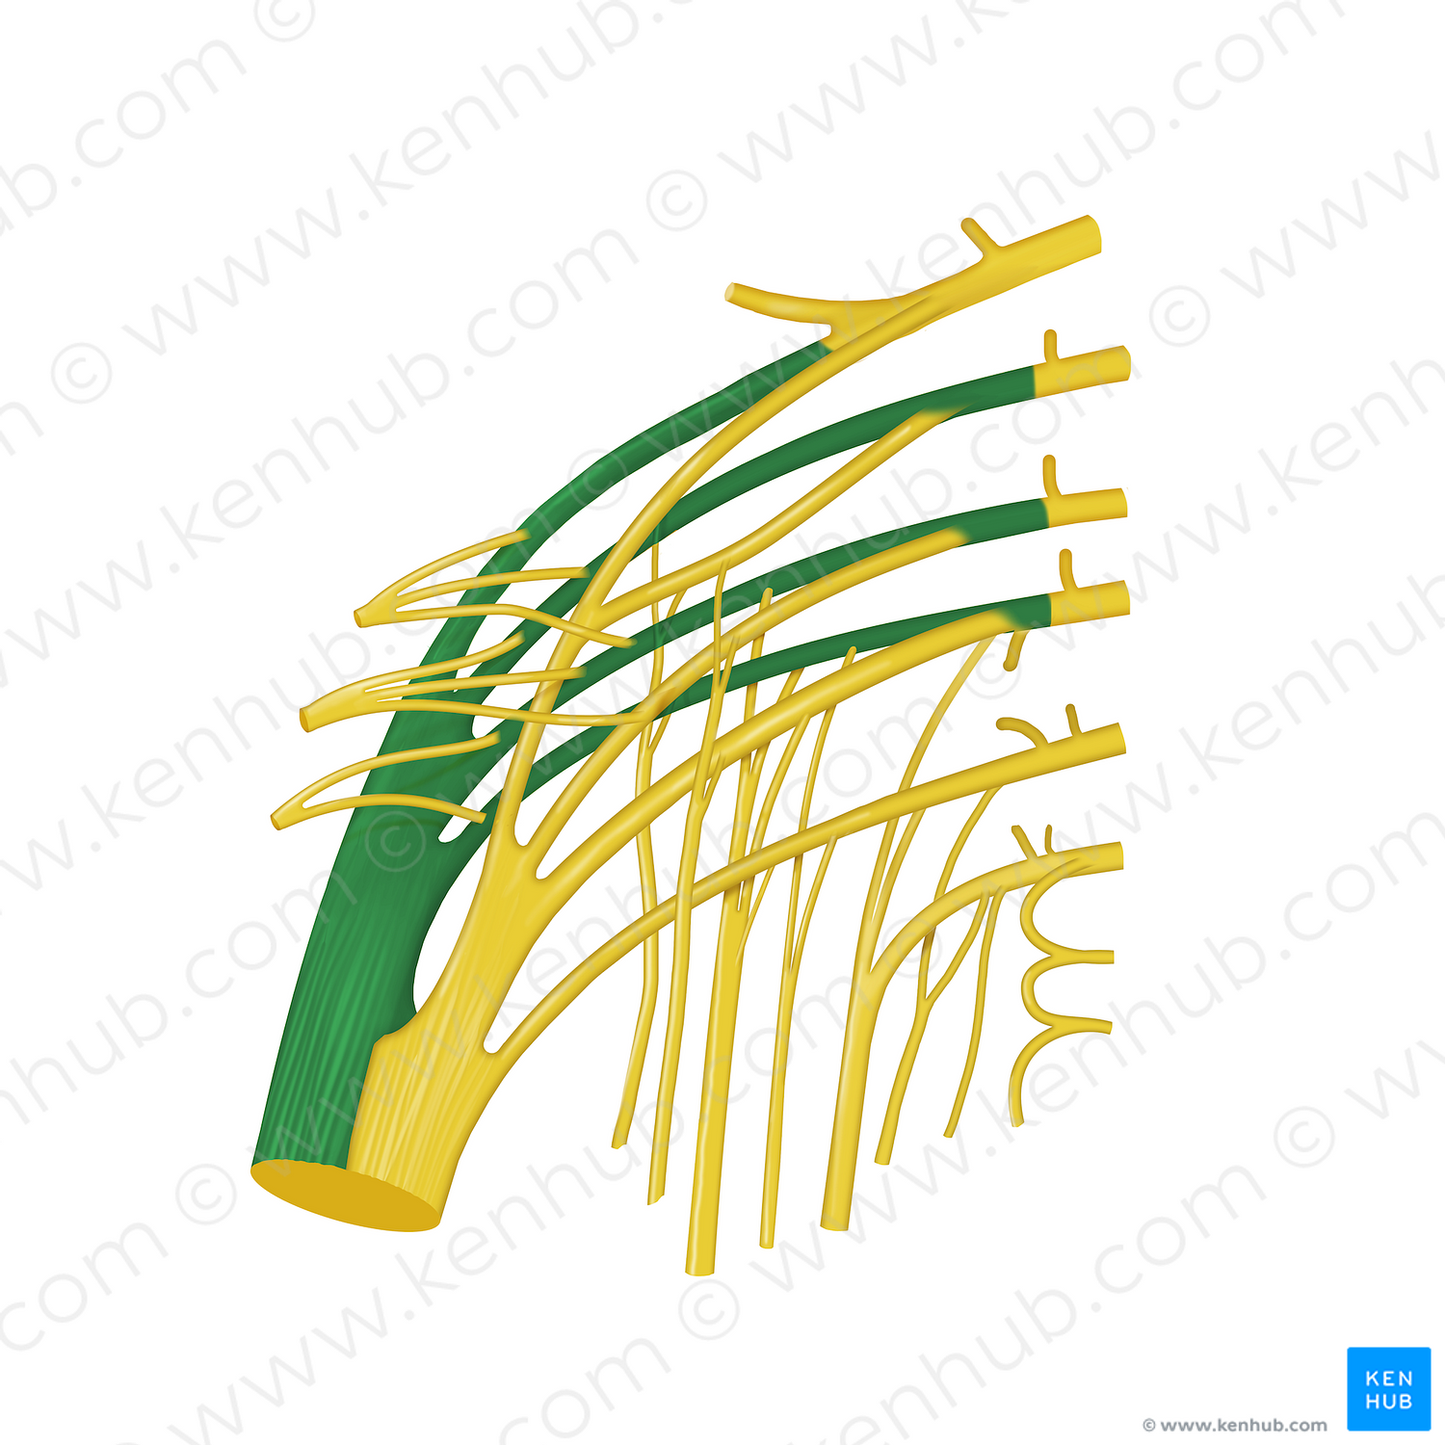 Common fibular division of sciatic nerve (#12746)